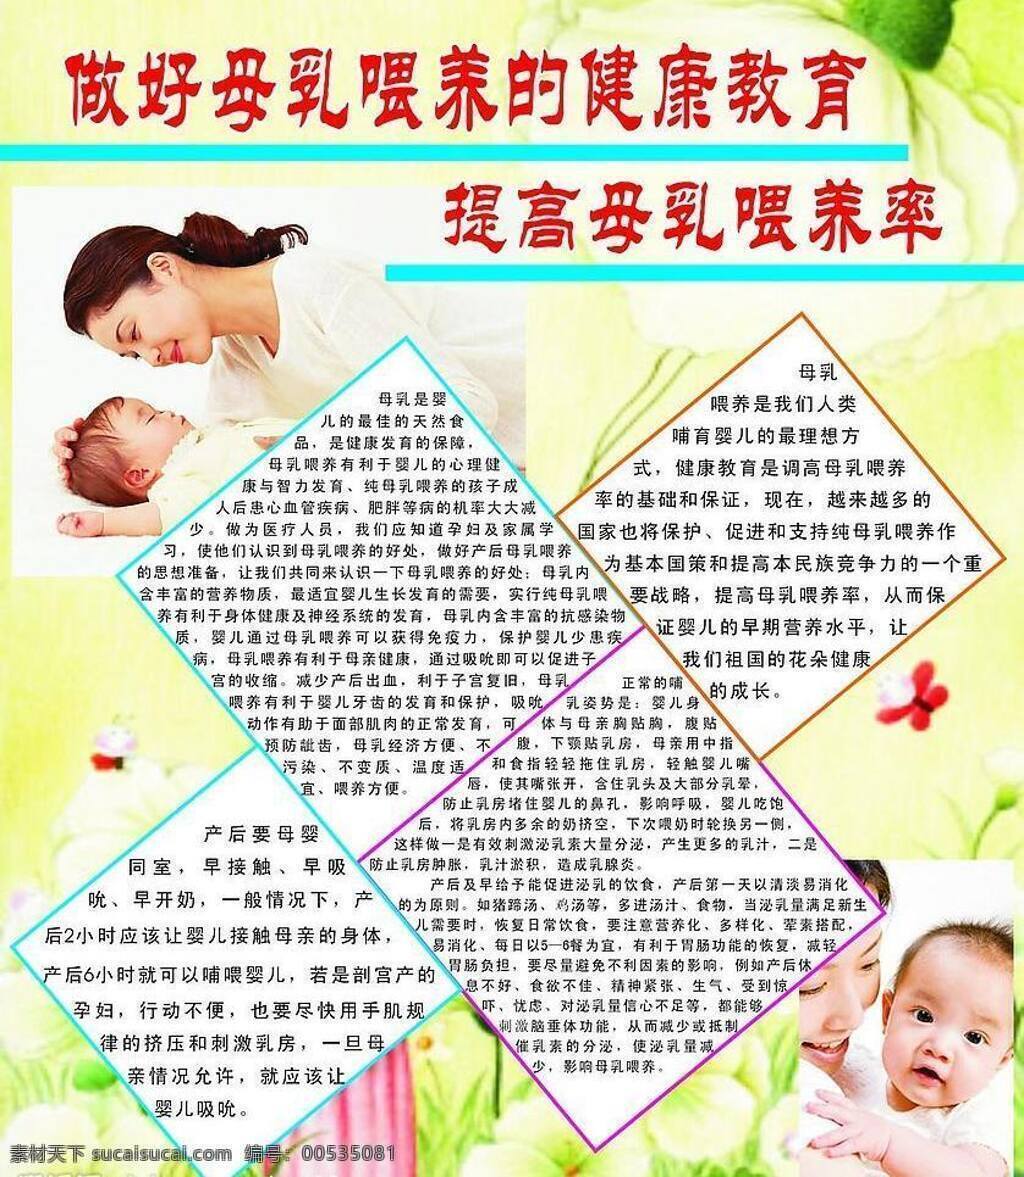 做好 母乳 喂养 健康教育 提高 率 健康 教育 生活百科 矢量图库 医疗保健 海报 其他海报设计